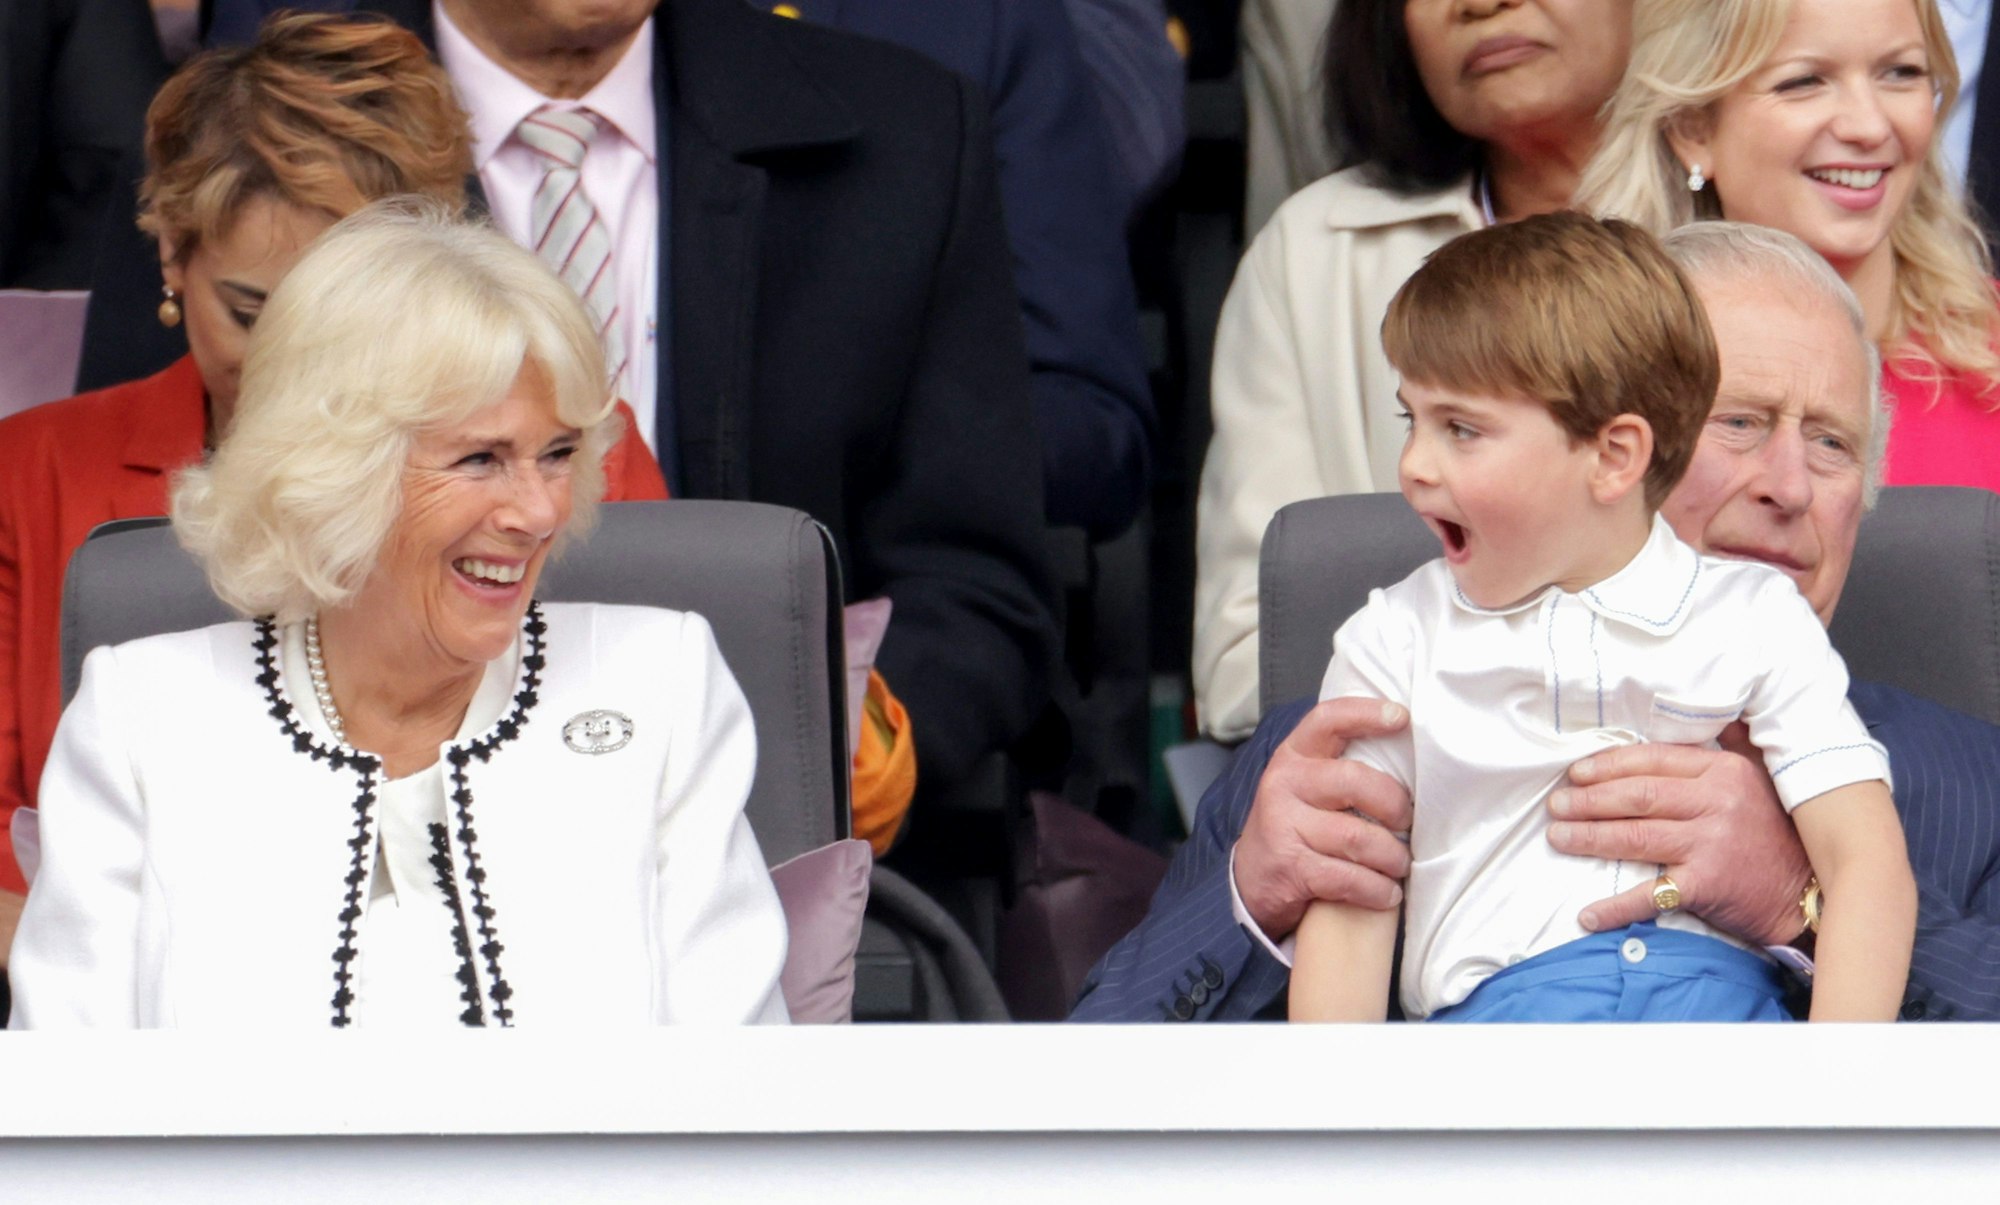 Camilla lacht über den kleinen Prinzen Louis, der auf dem Schoß seines Großvaters, des heutigen Königs Charles, sitzt.